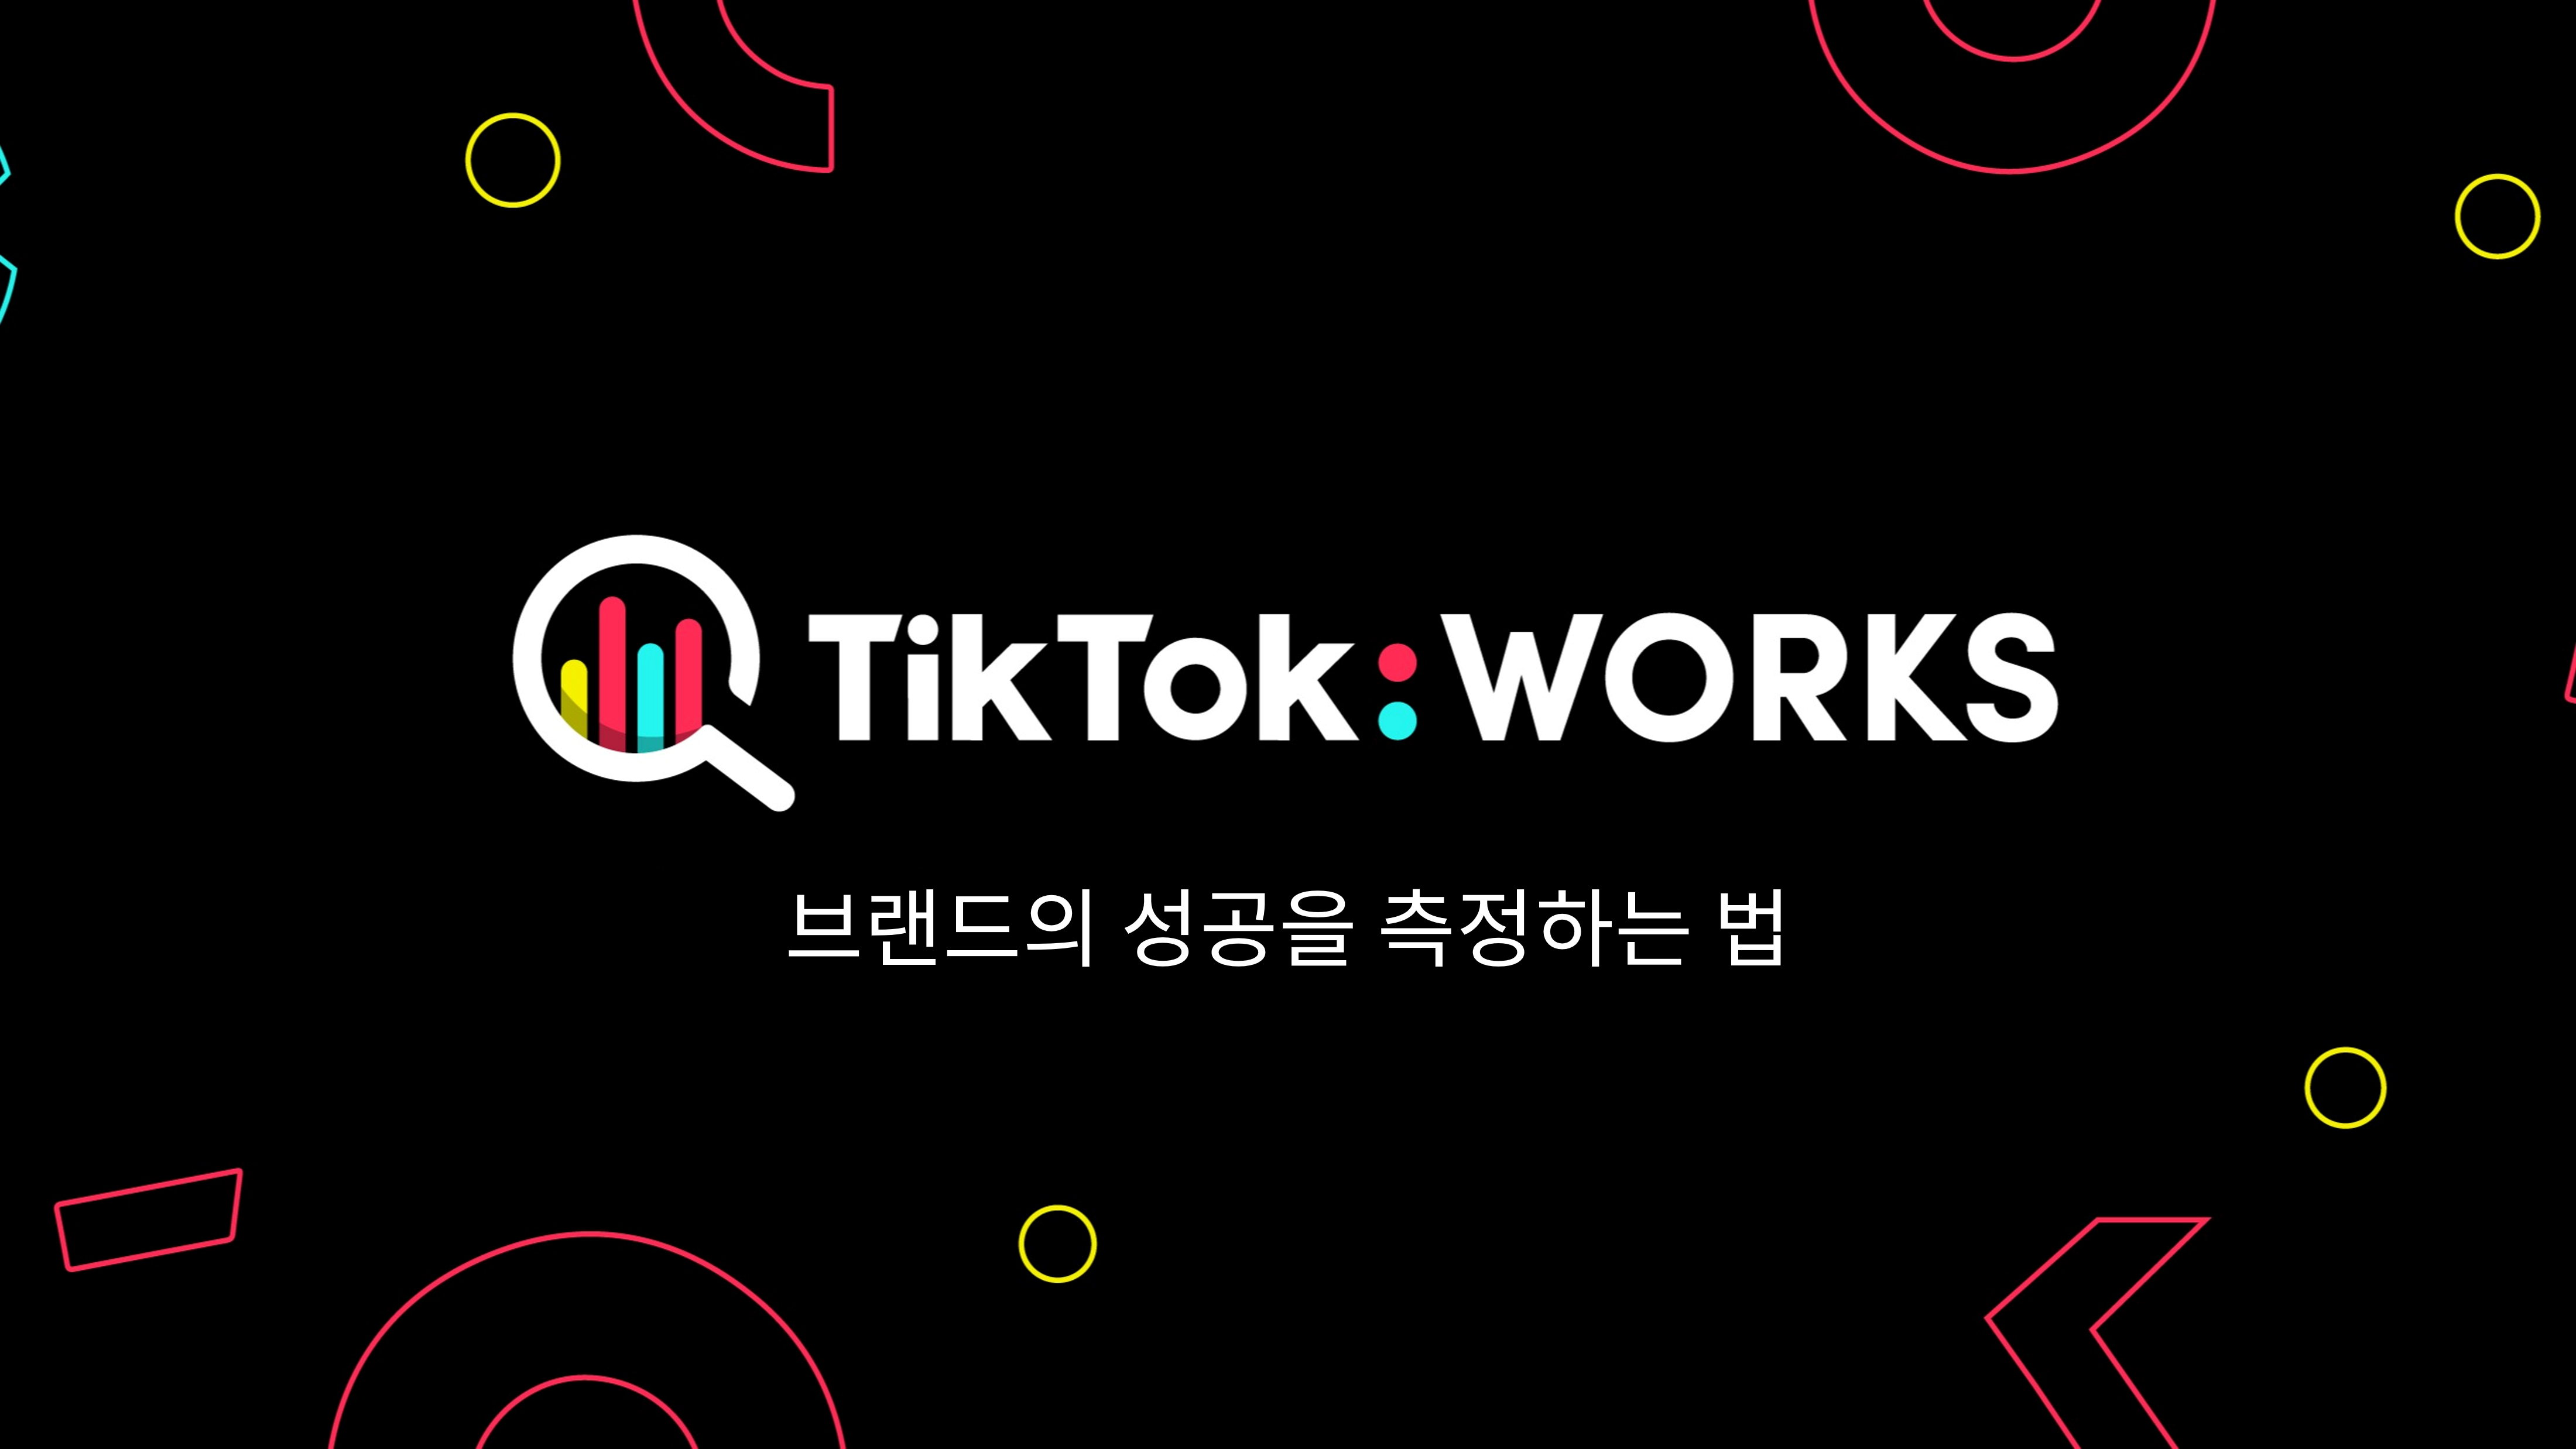 TikTok Works KV Black 980x350 Hi-res